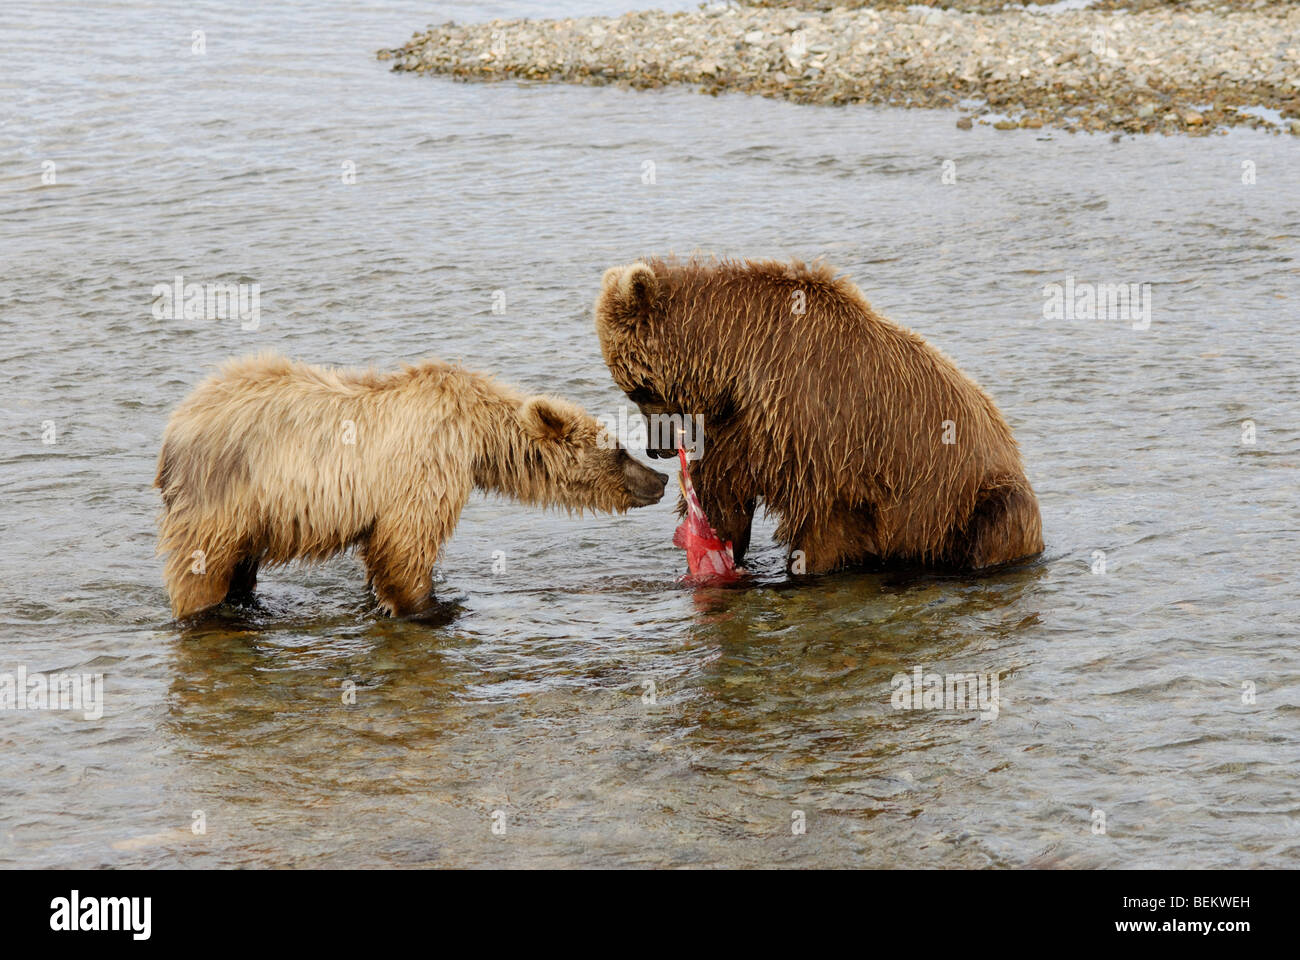 Cub et Mère grizzly avec du saumon, Katmai National Park, Alaska. Cub est la mendicité Banque D'Images